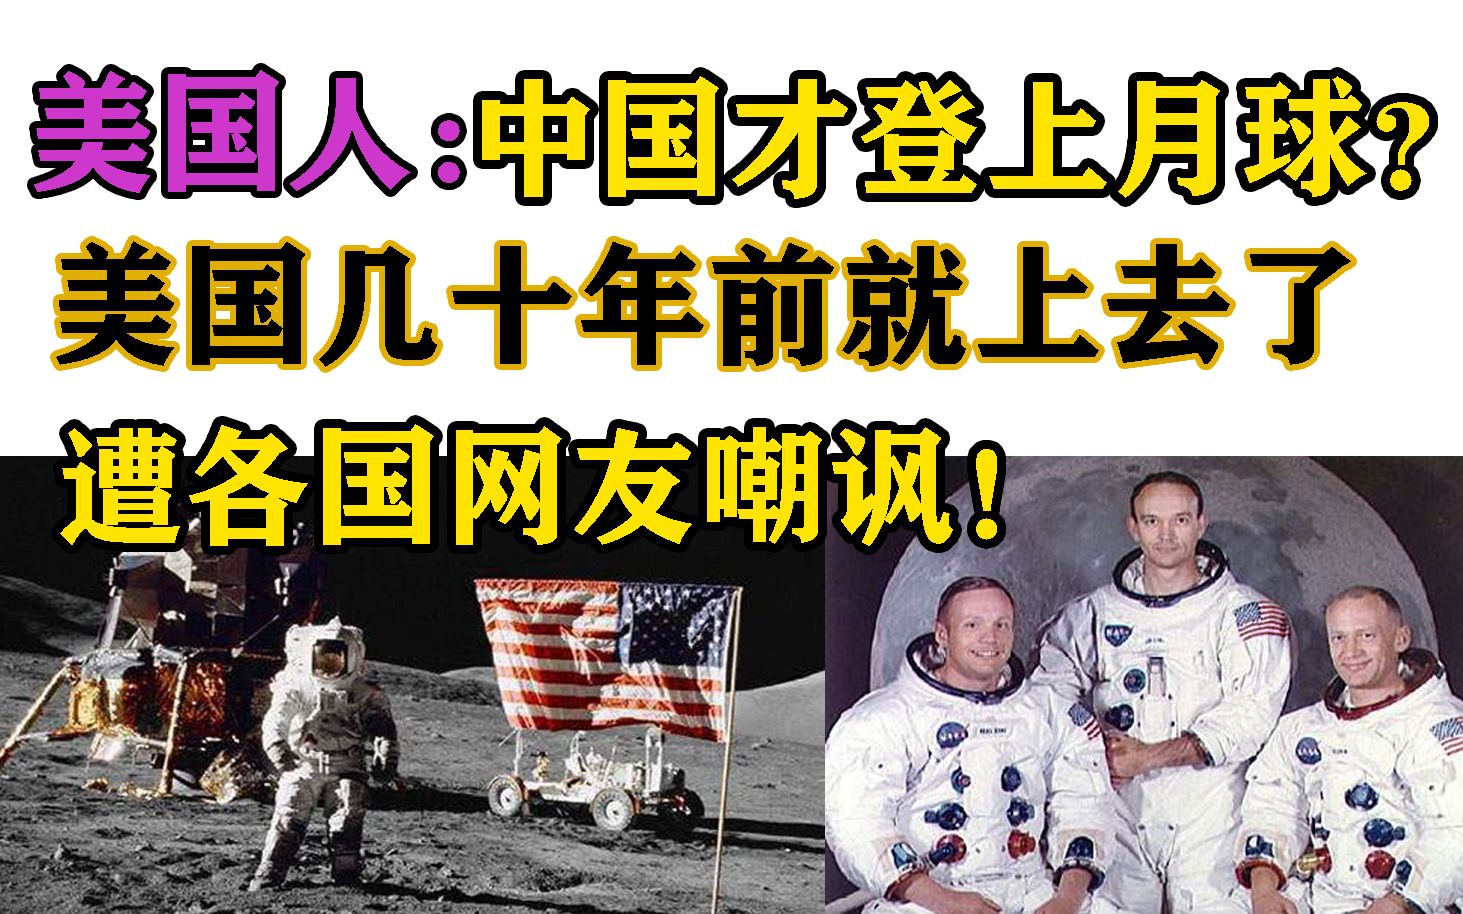 美国人：中国现在才登上月球？美国几十年前就上去了。遭国外网友嘲讽